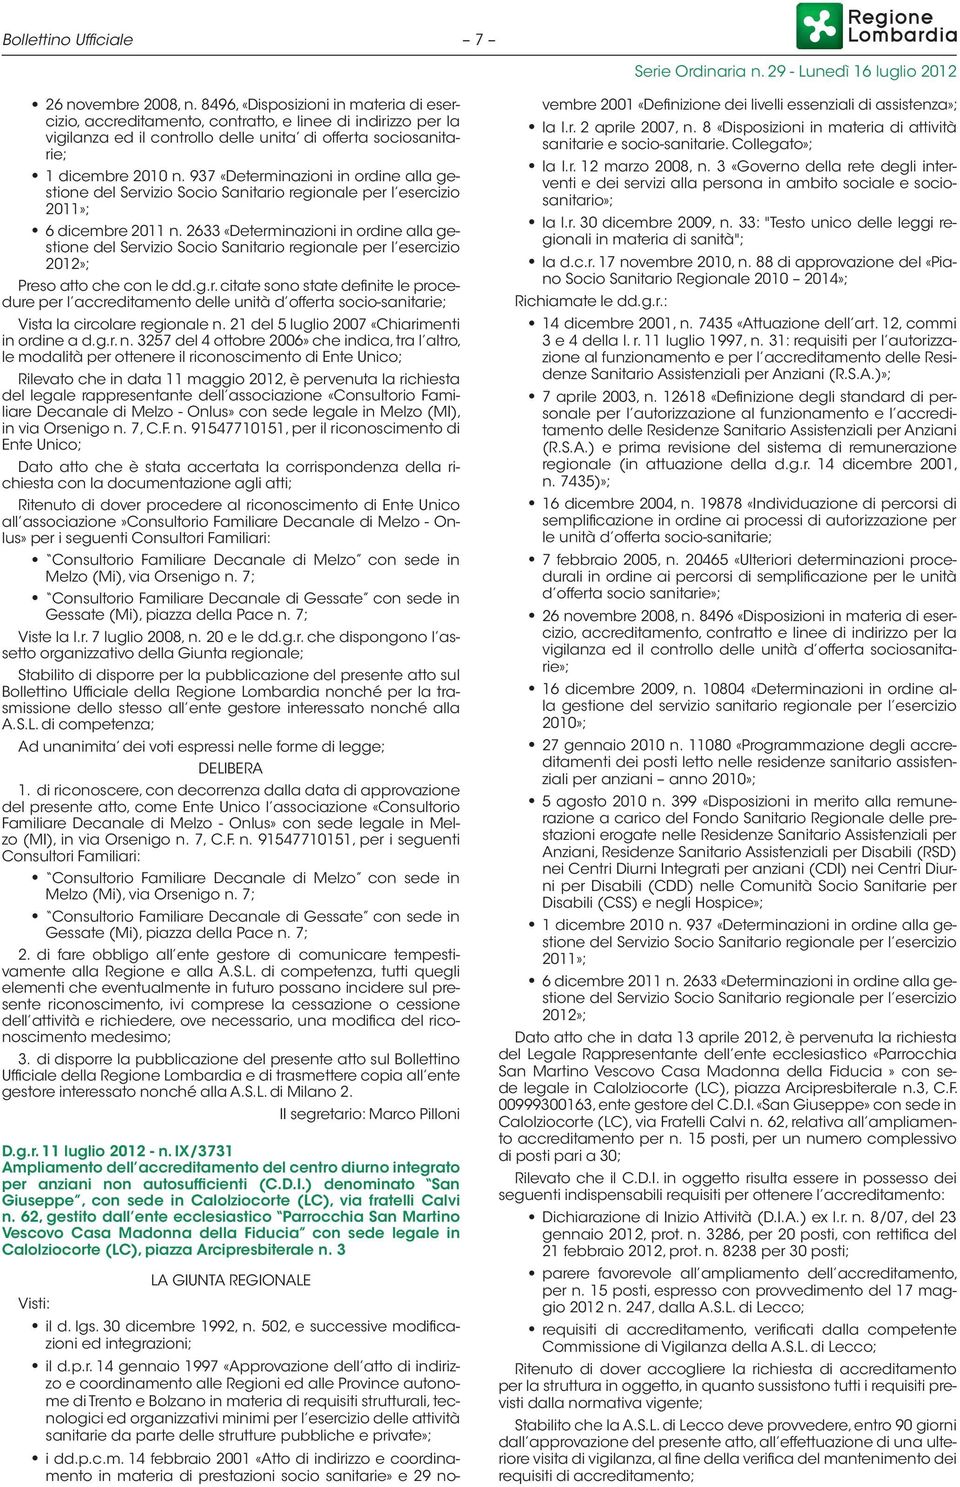 937 «Determinazioni in ordine alla gestione del Servizio Socio Sanitario regionale per l esercizio 2011»; 6 dicembre 2011 n.